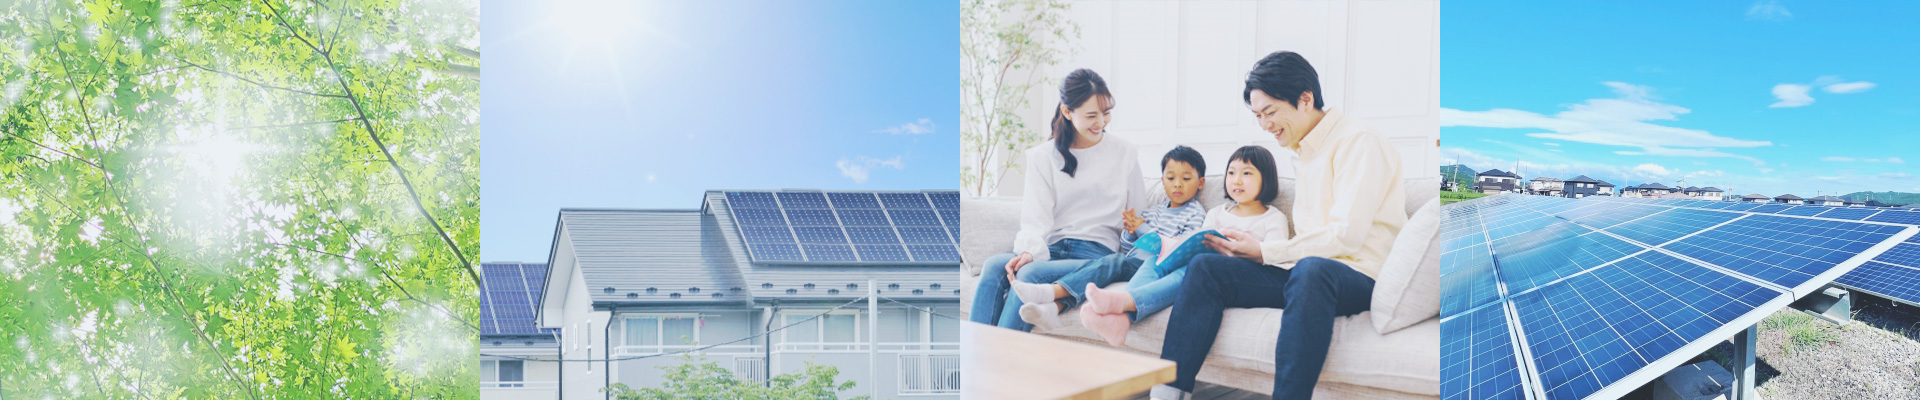 太陽光発電・自然・住宅・家族